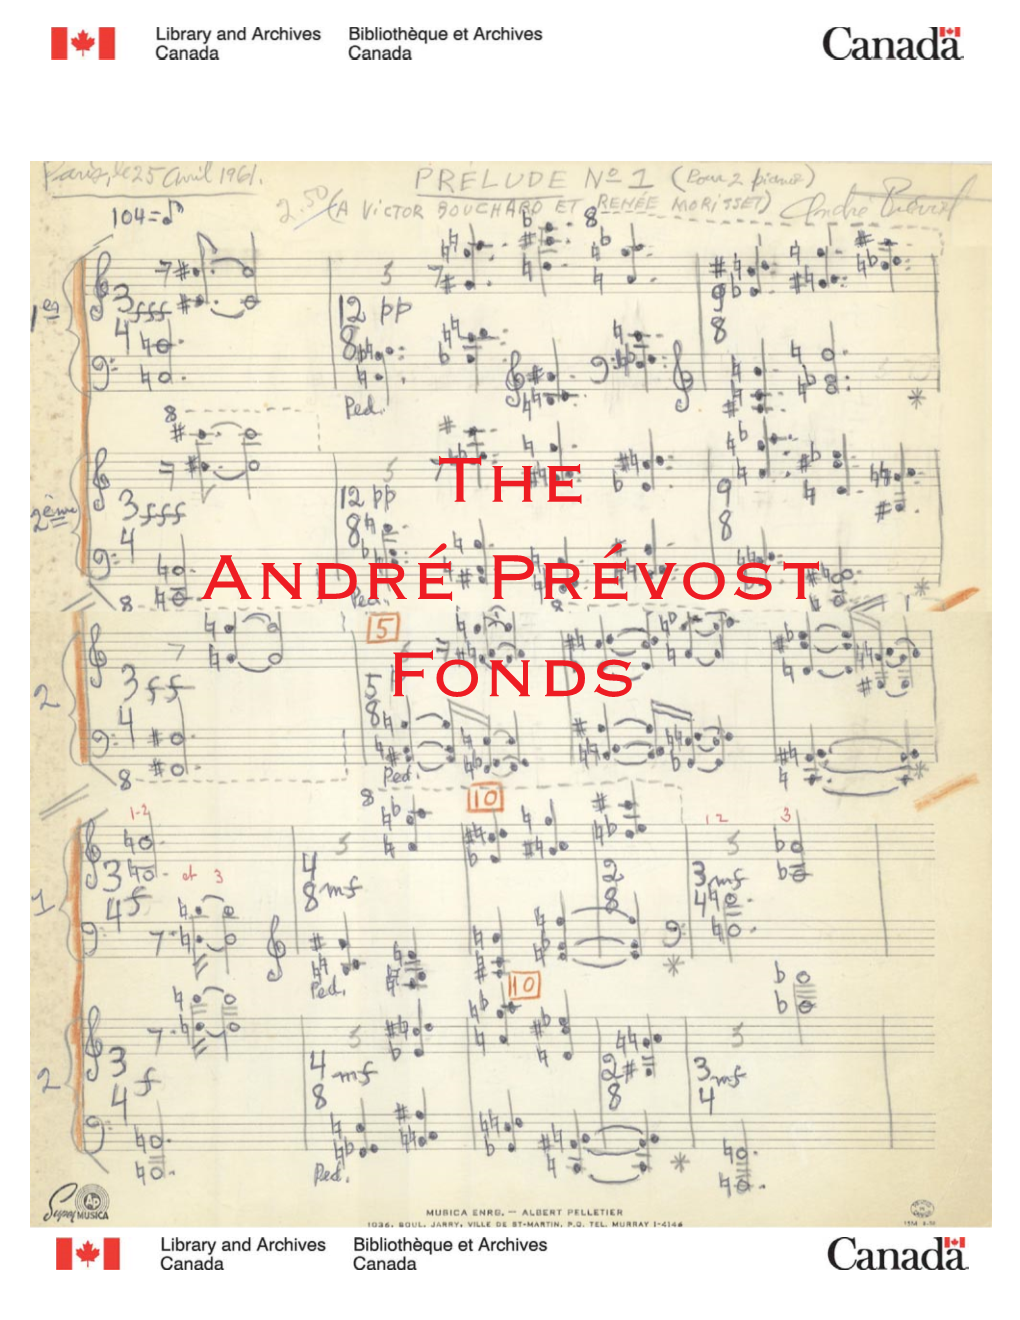 The André Prévost Fonds the ANDRÉ PRÉVOST FONDS